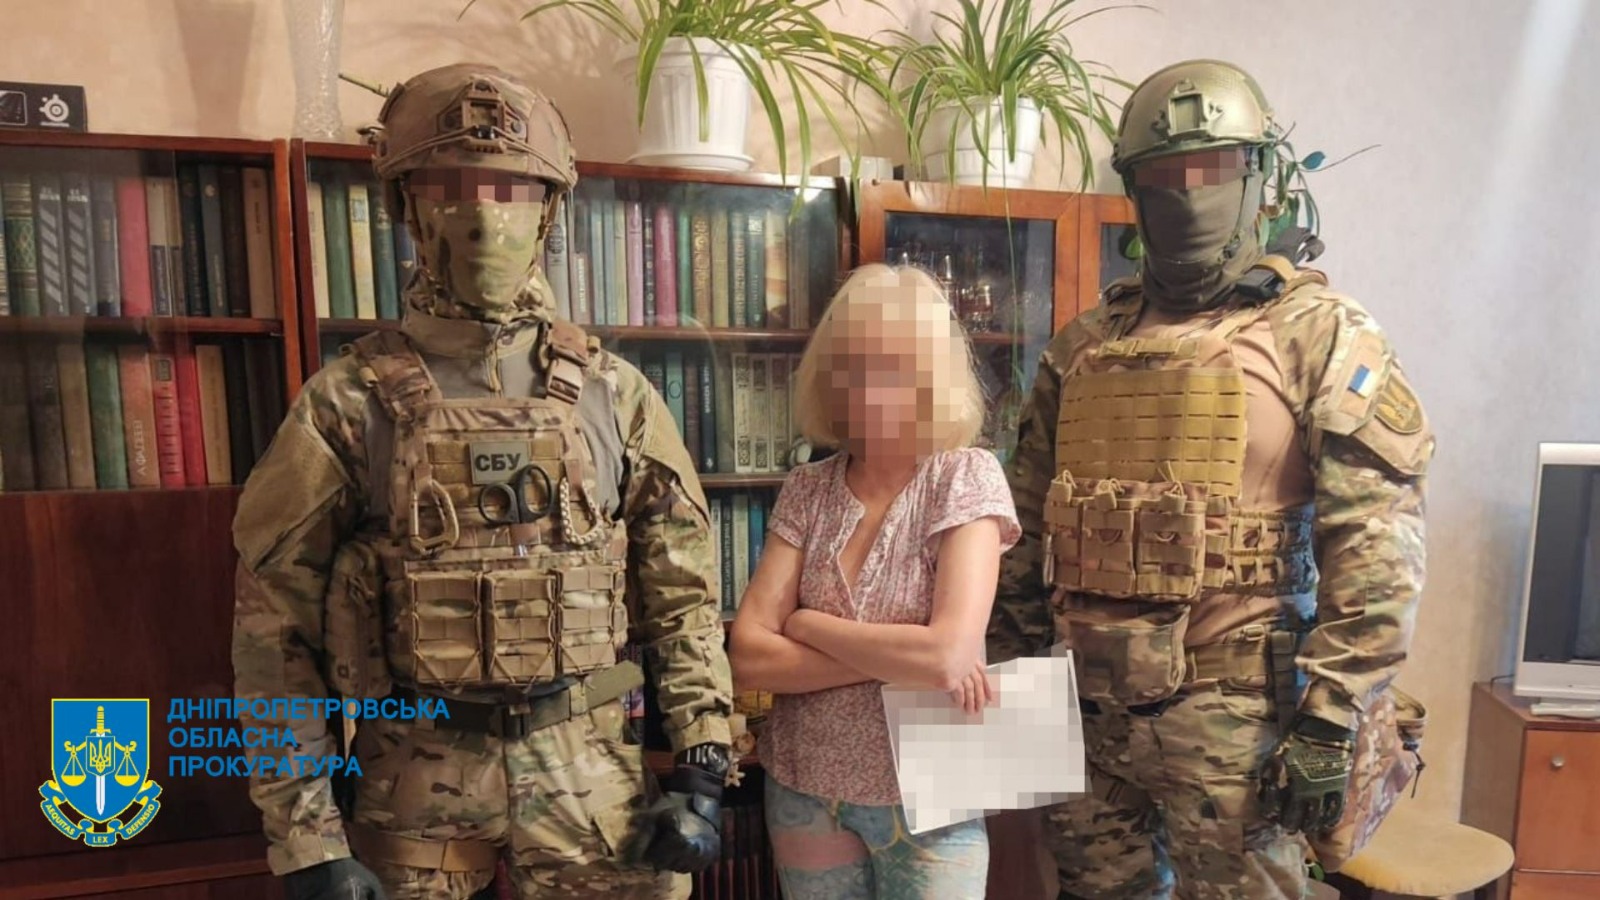 Надіслала представнику рф відео із військовими ЗСУ, які охороняли міст у м. Дніпрі, – підозрюється співробітниця Укрзалізниці